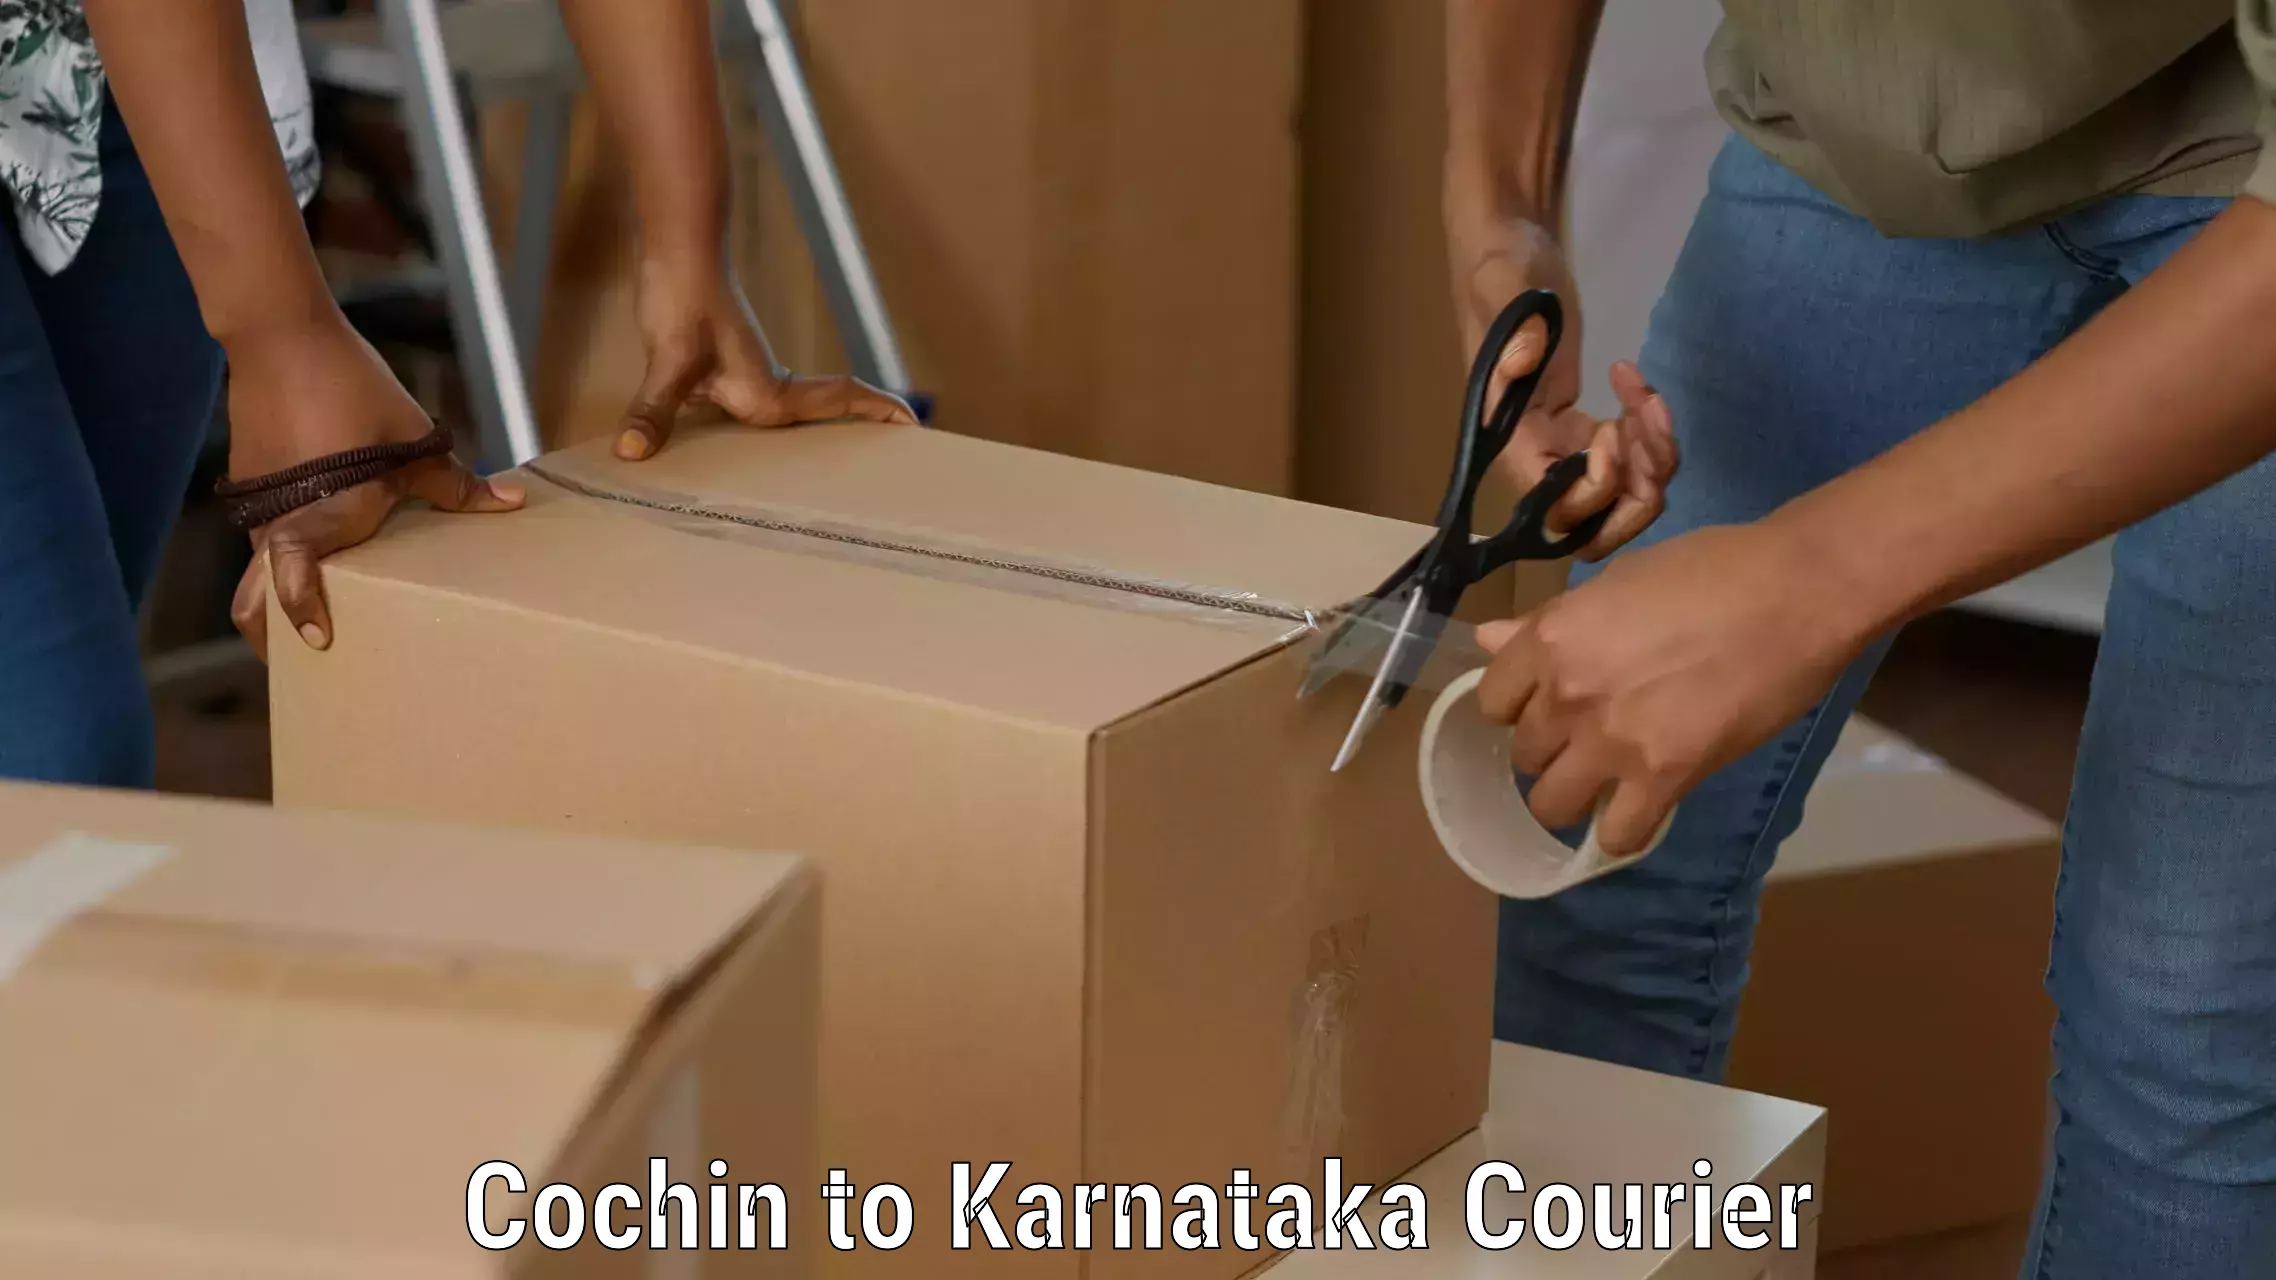 Courier service comparison Cochin to Chincholi